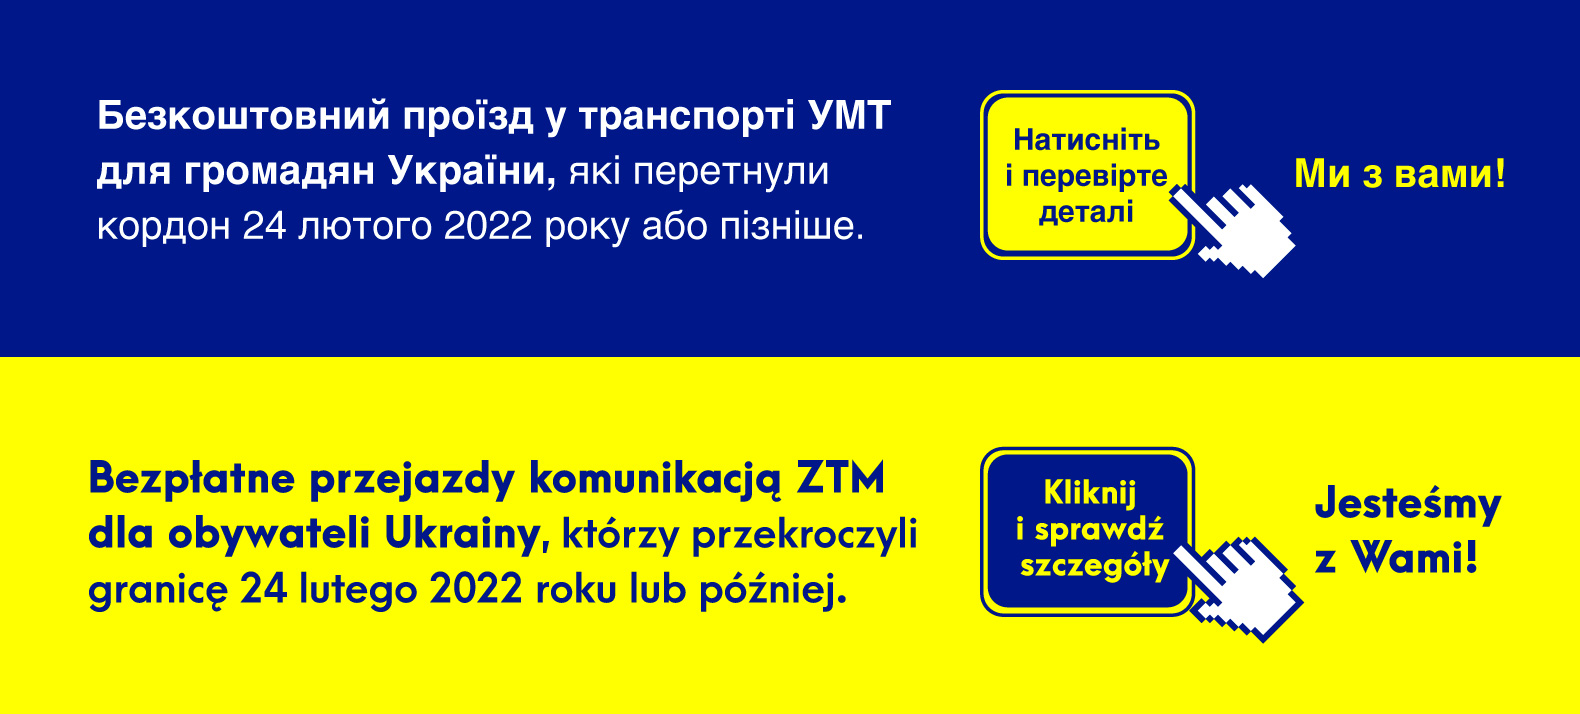 Bezpłatna komunikacja miejska ZTM dla obywateli Ukrainy